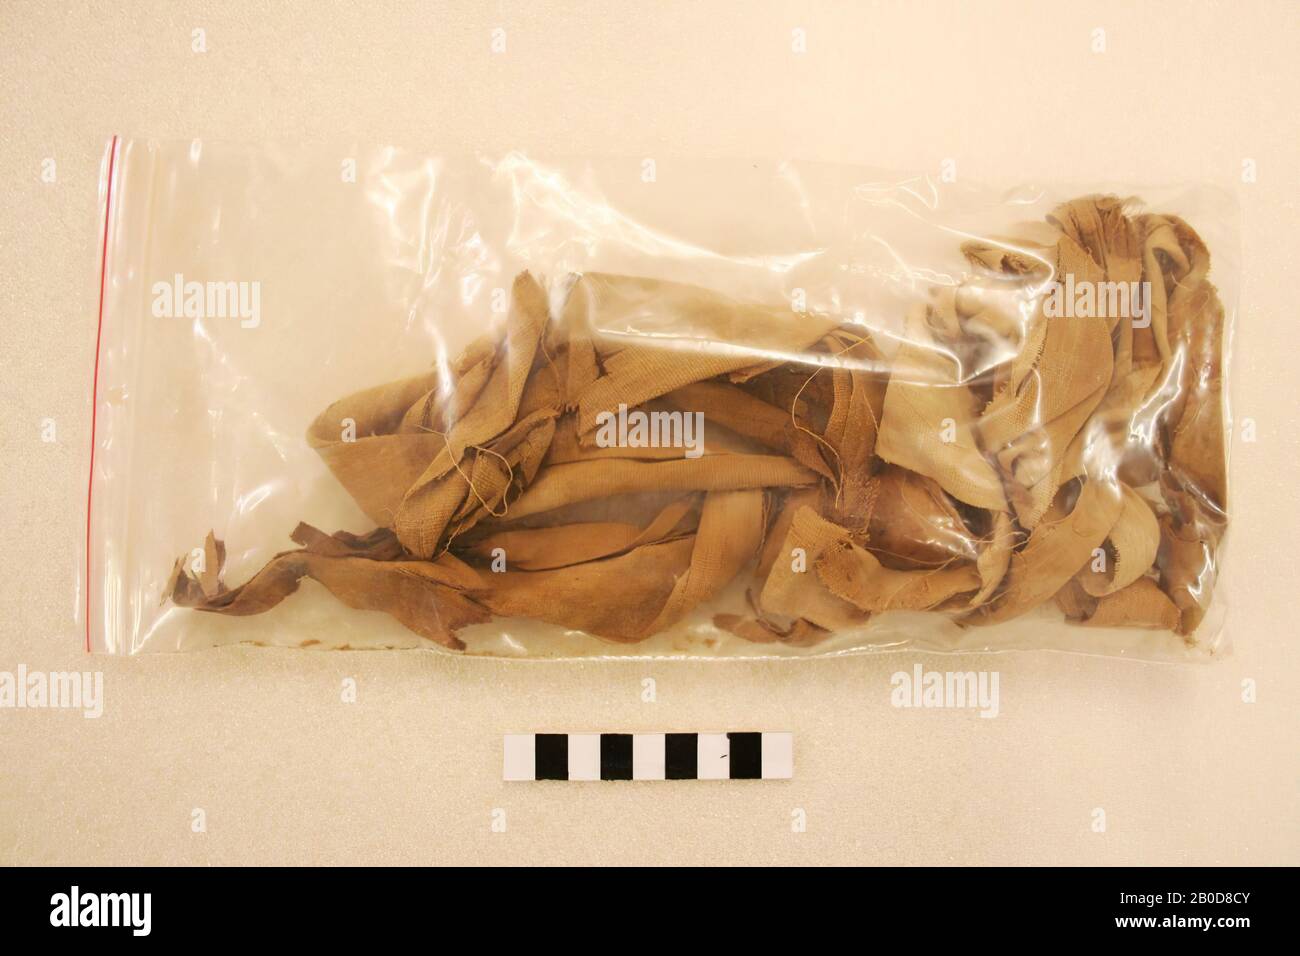 Fragments de wraps de momie., Upholstère, tissu, lin, Egypte Banque D'Images